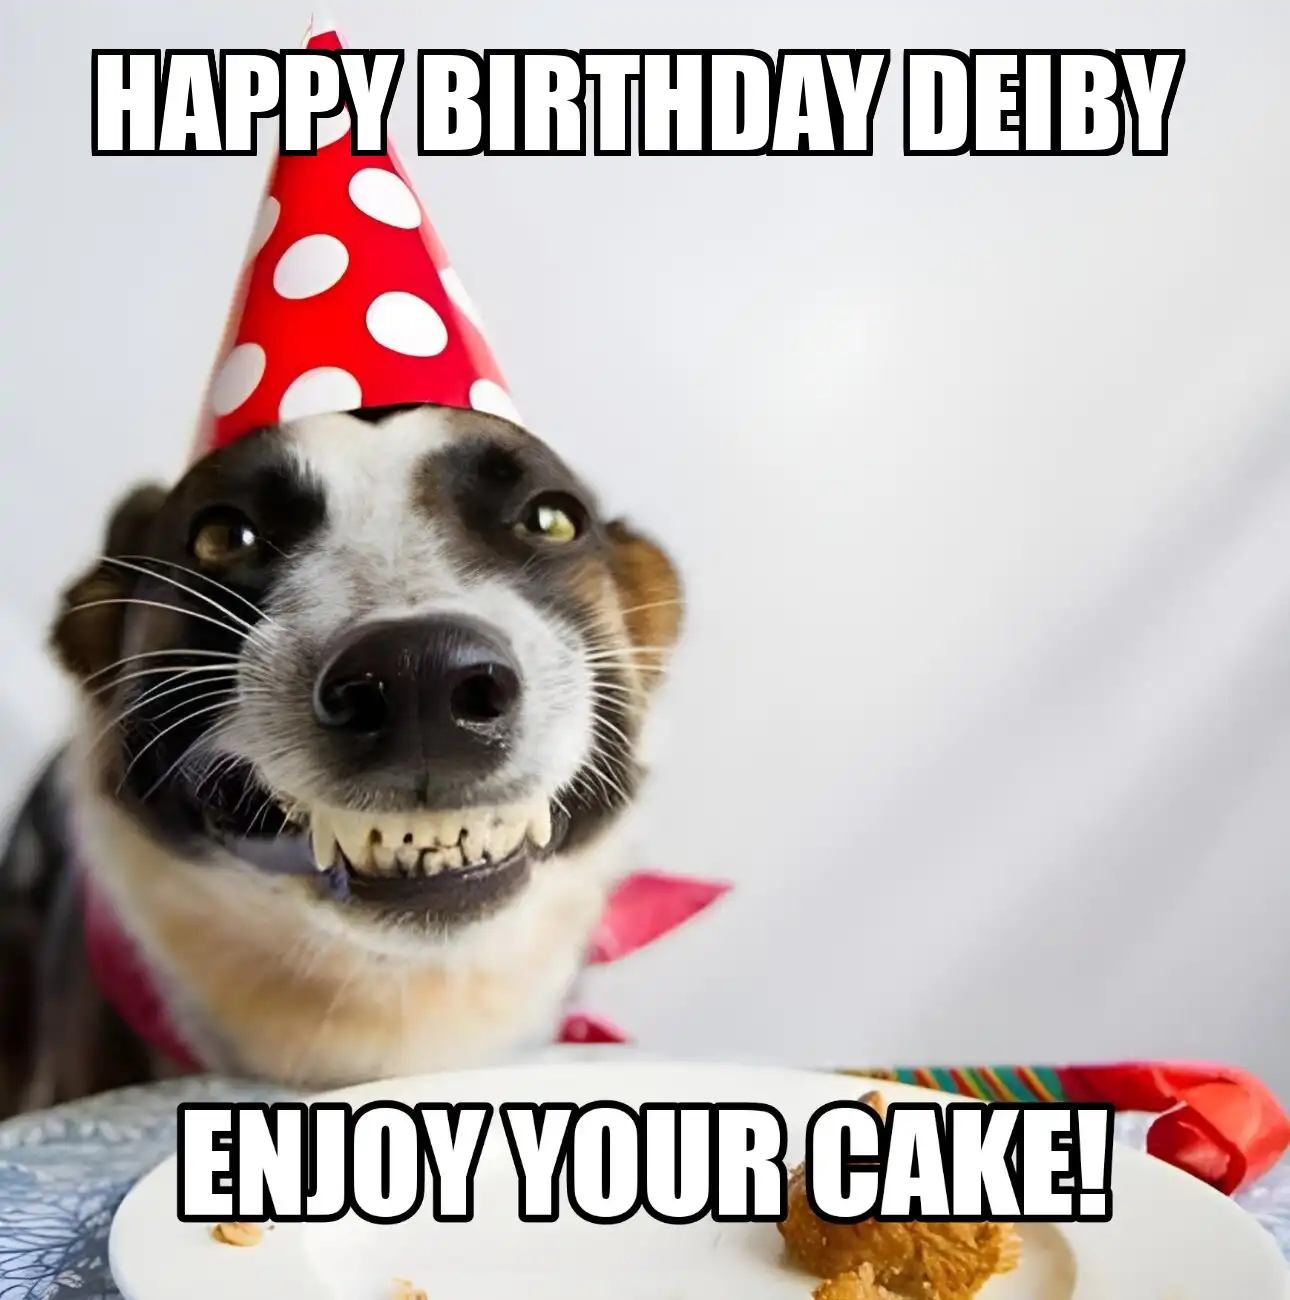 Happy Birthday Deiby Enjoy Your Cake Dog Meme